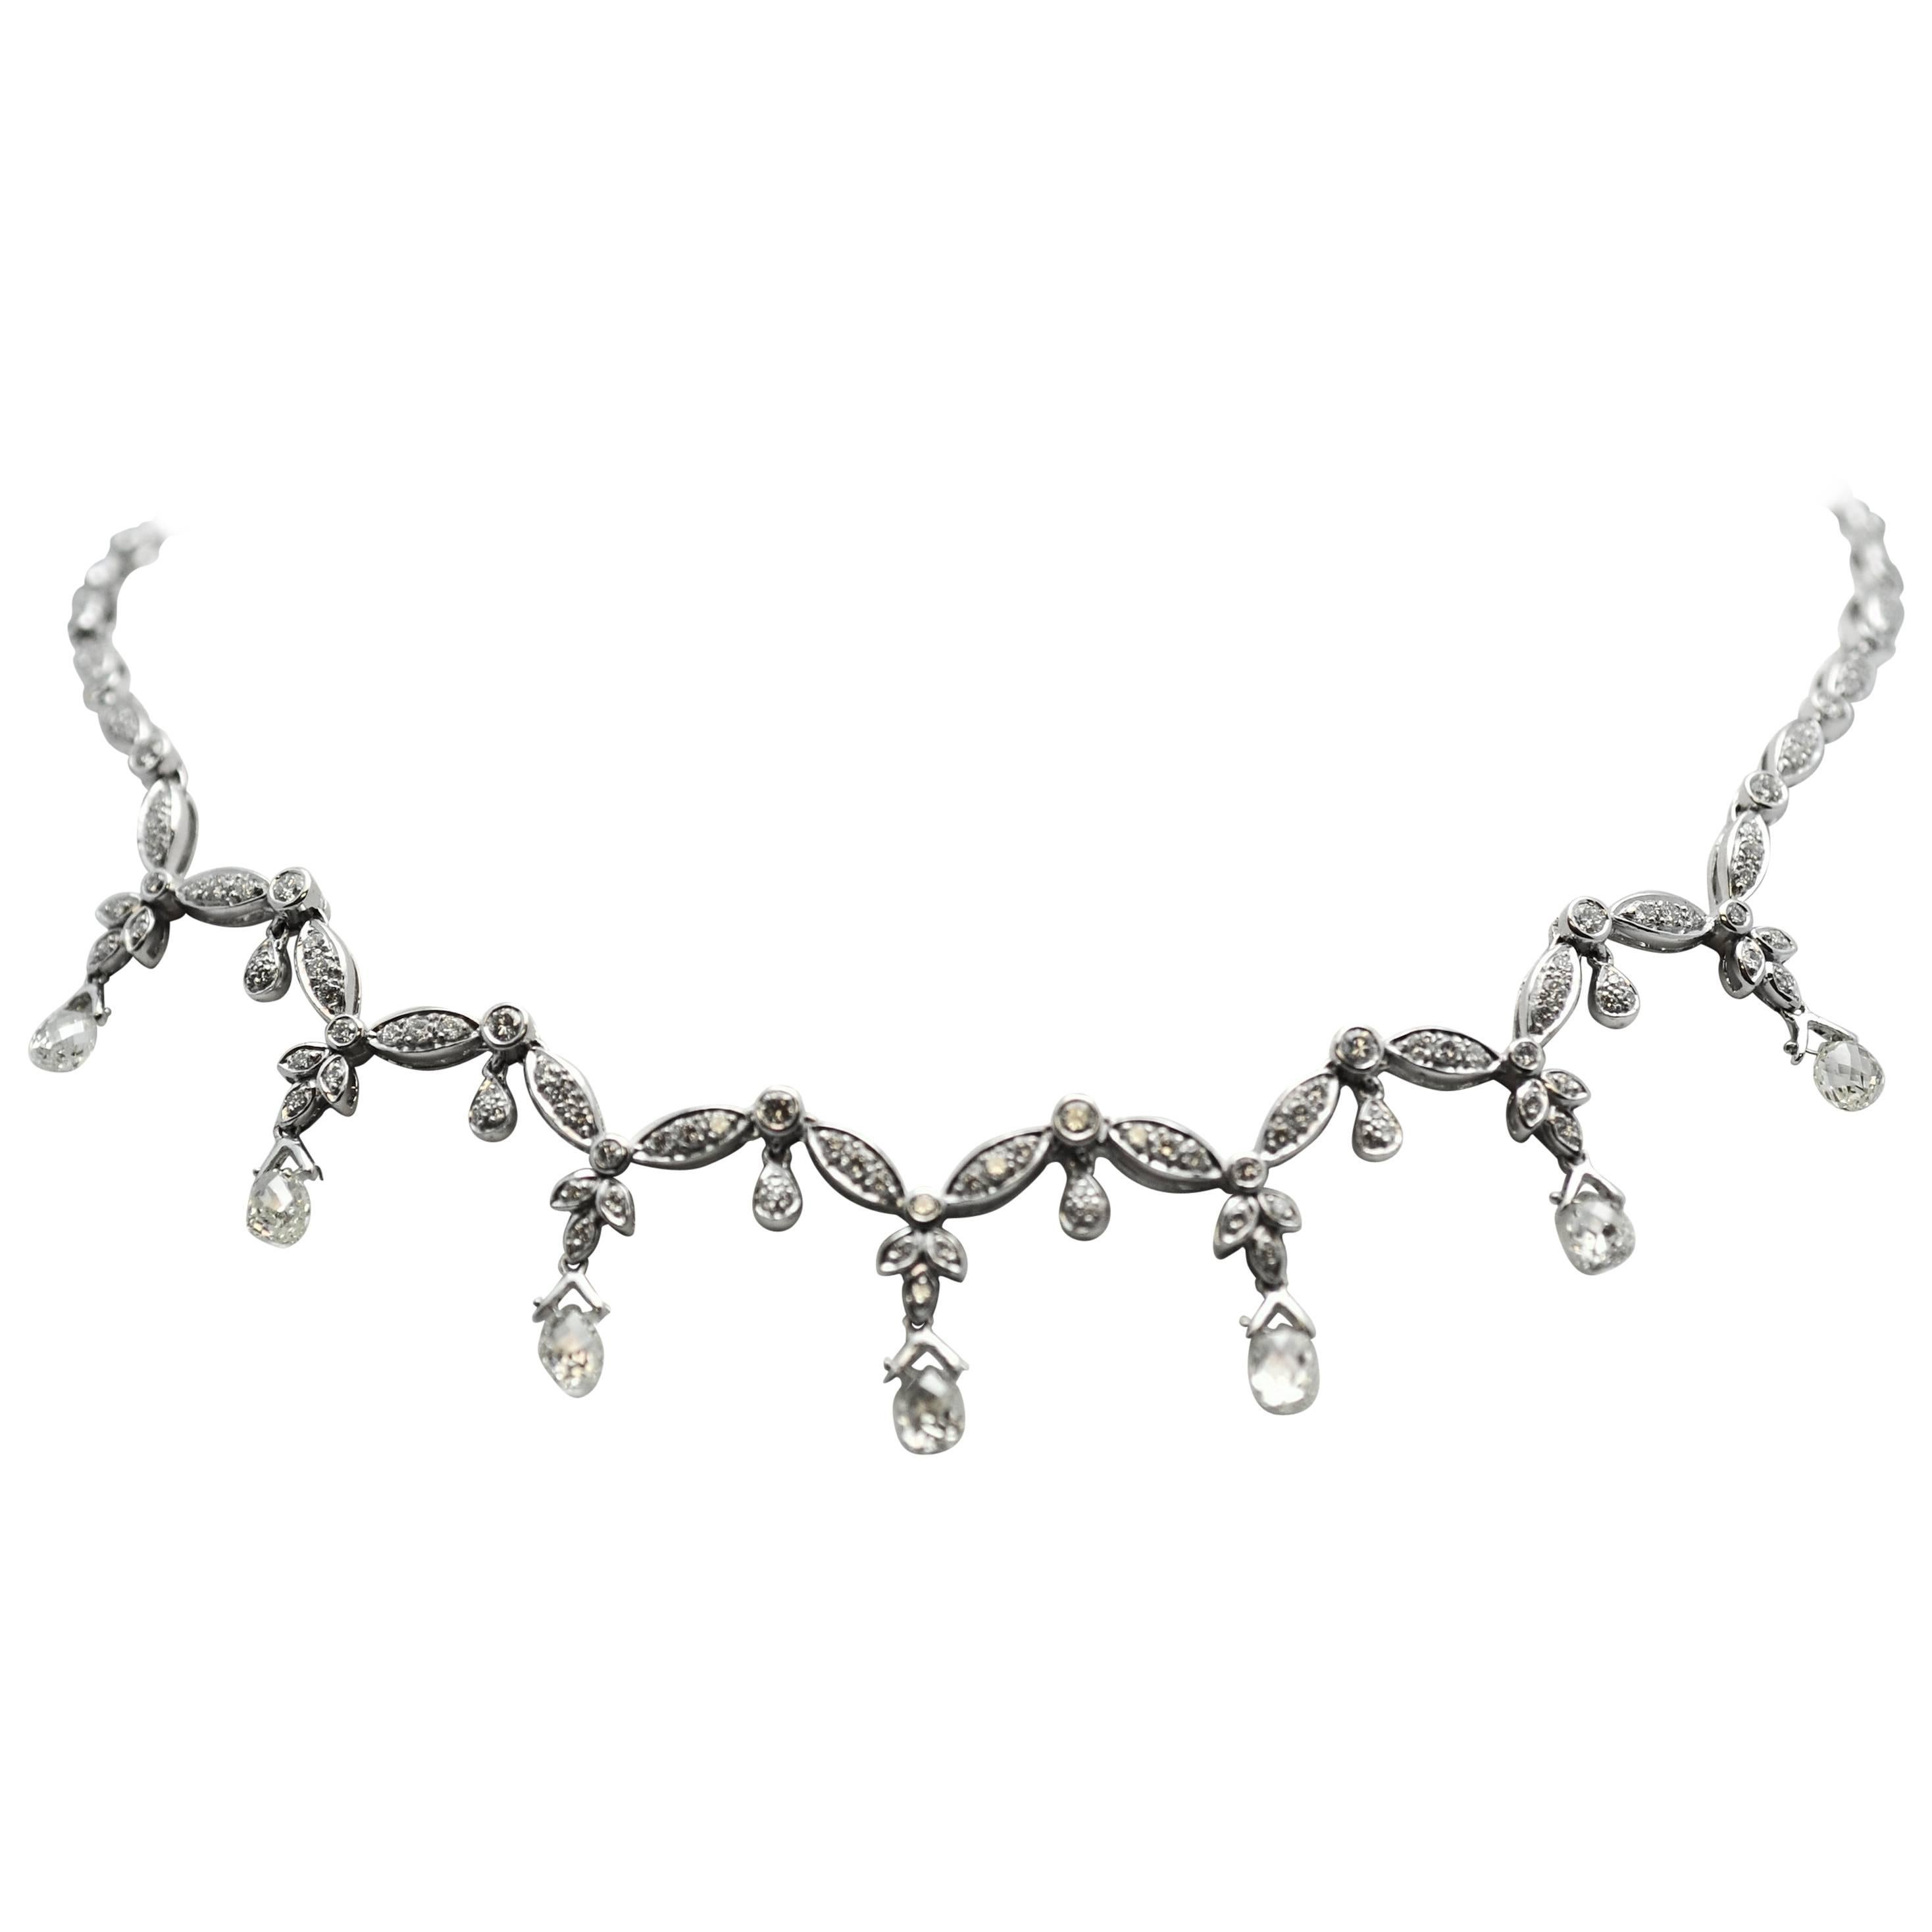 Robert Wander Inc. Belle Époque Style Briolette Diamond Gold Necklace For Sale